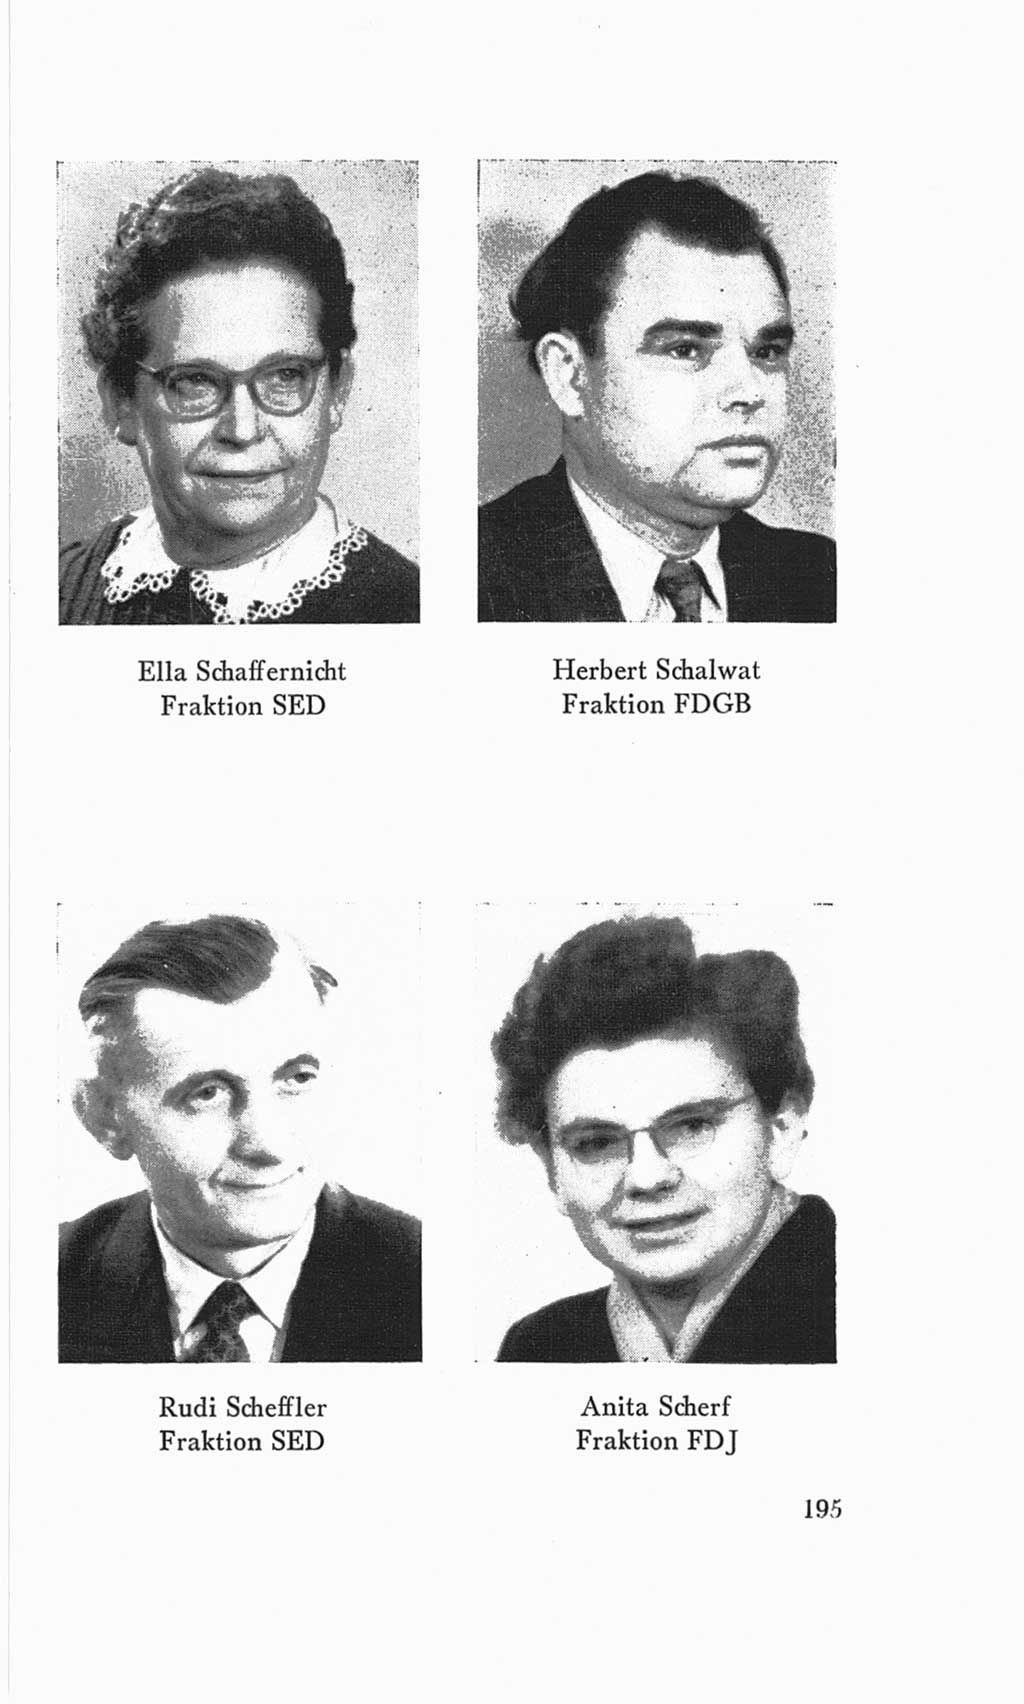 Handbuch der Volkskammer (VK) der Deutschen Demokratischen Republik (DDR), 3. Wahlperiode 1958-1963, Seite 195 (Hdb. VK. DDR 3. WP. 1958-1963, S. 195)